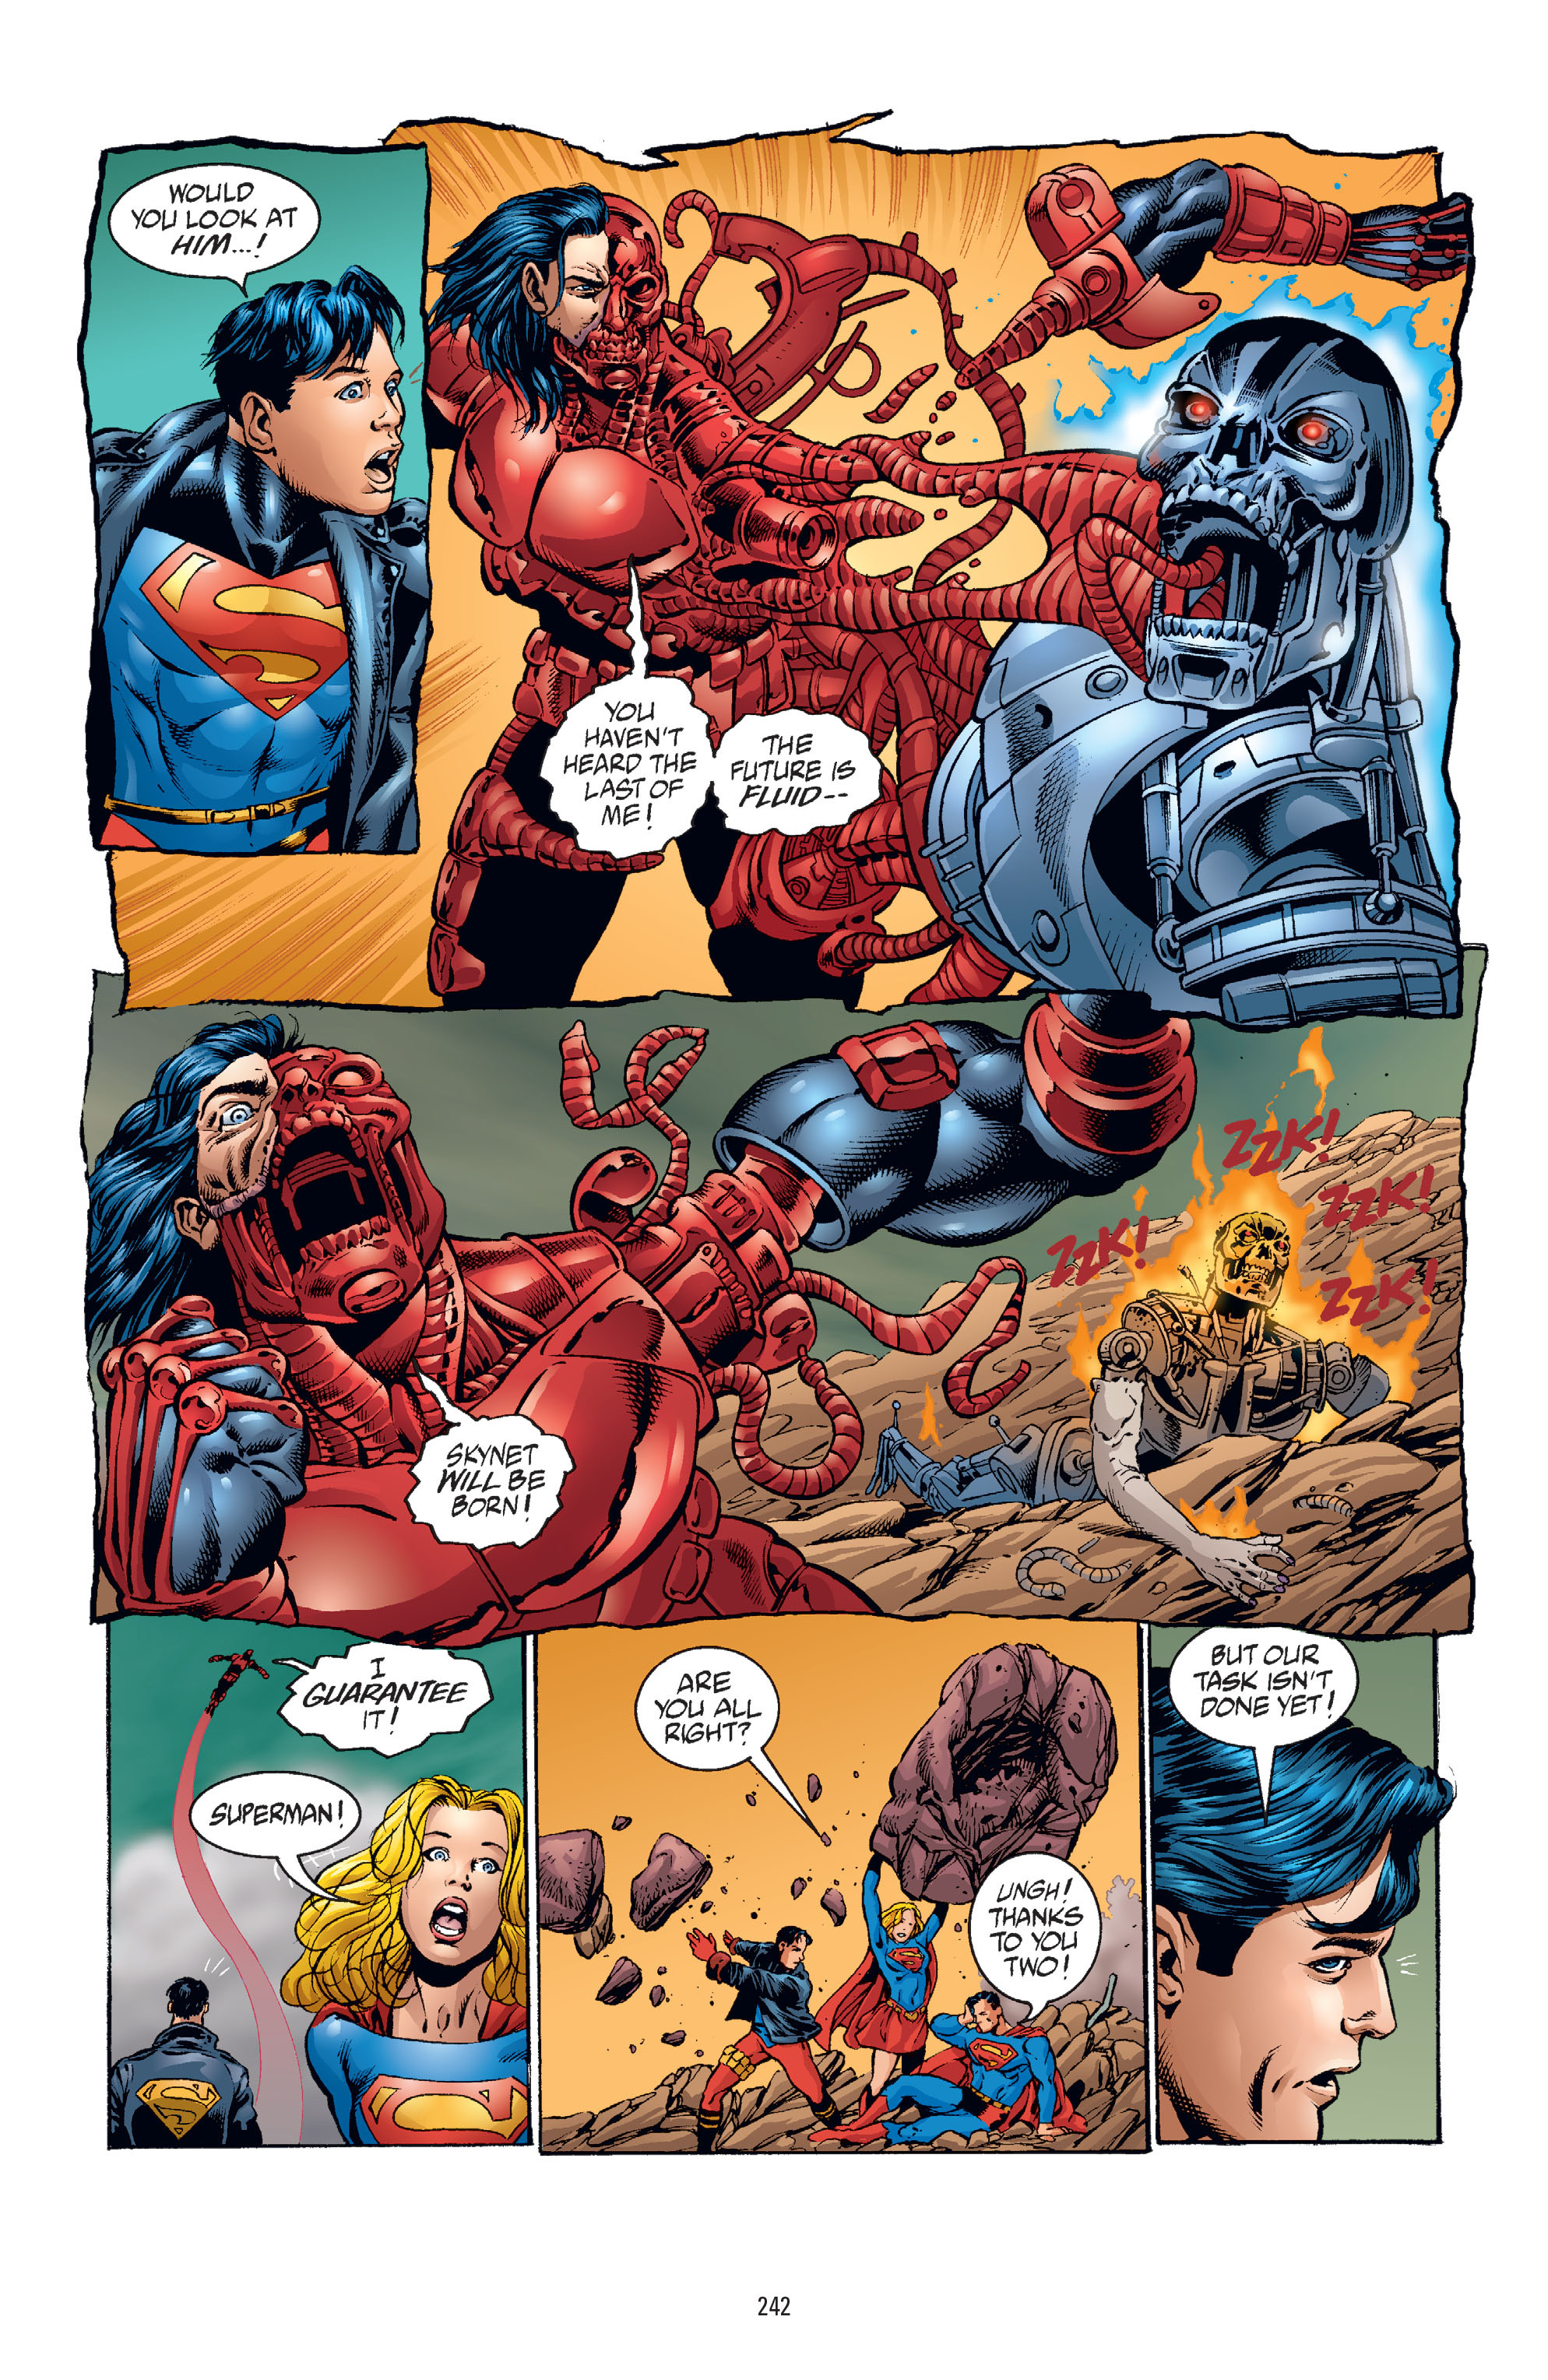 DC Comics/Dark Horse Comics: Justice League Full #1 - English 234